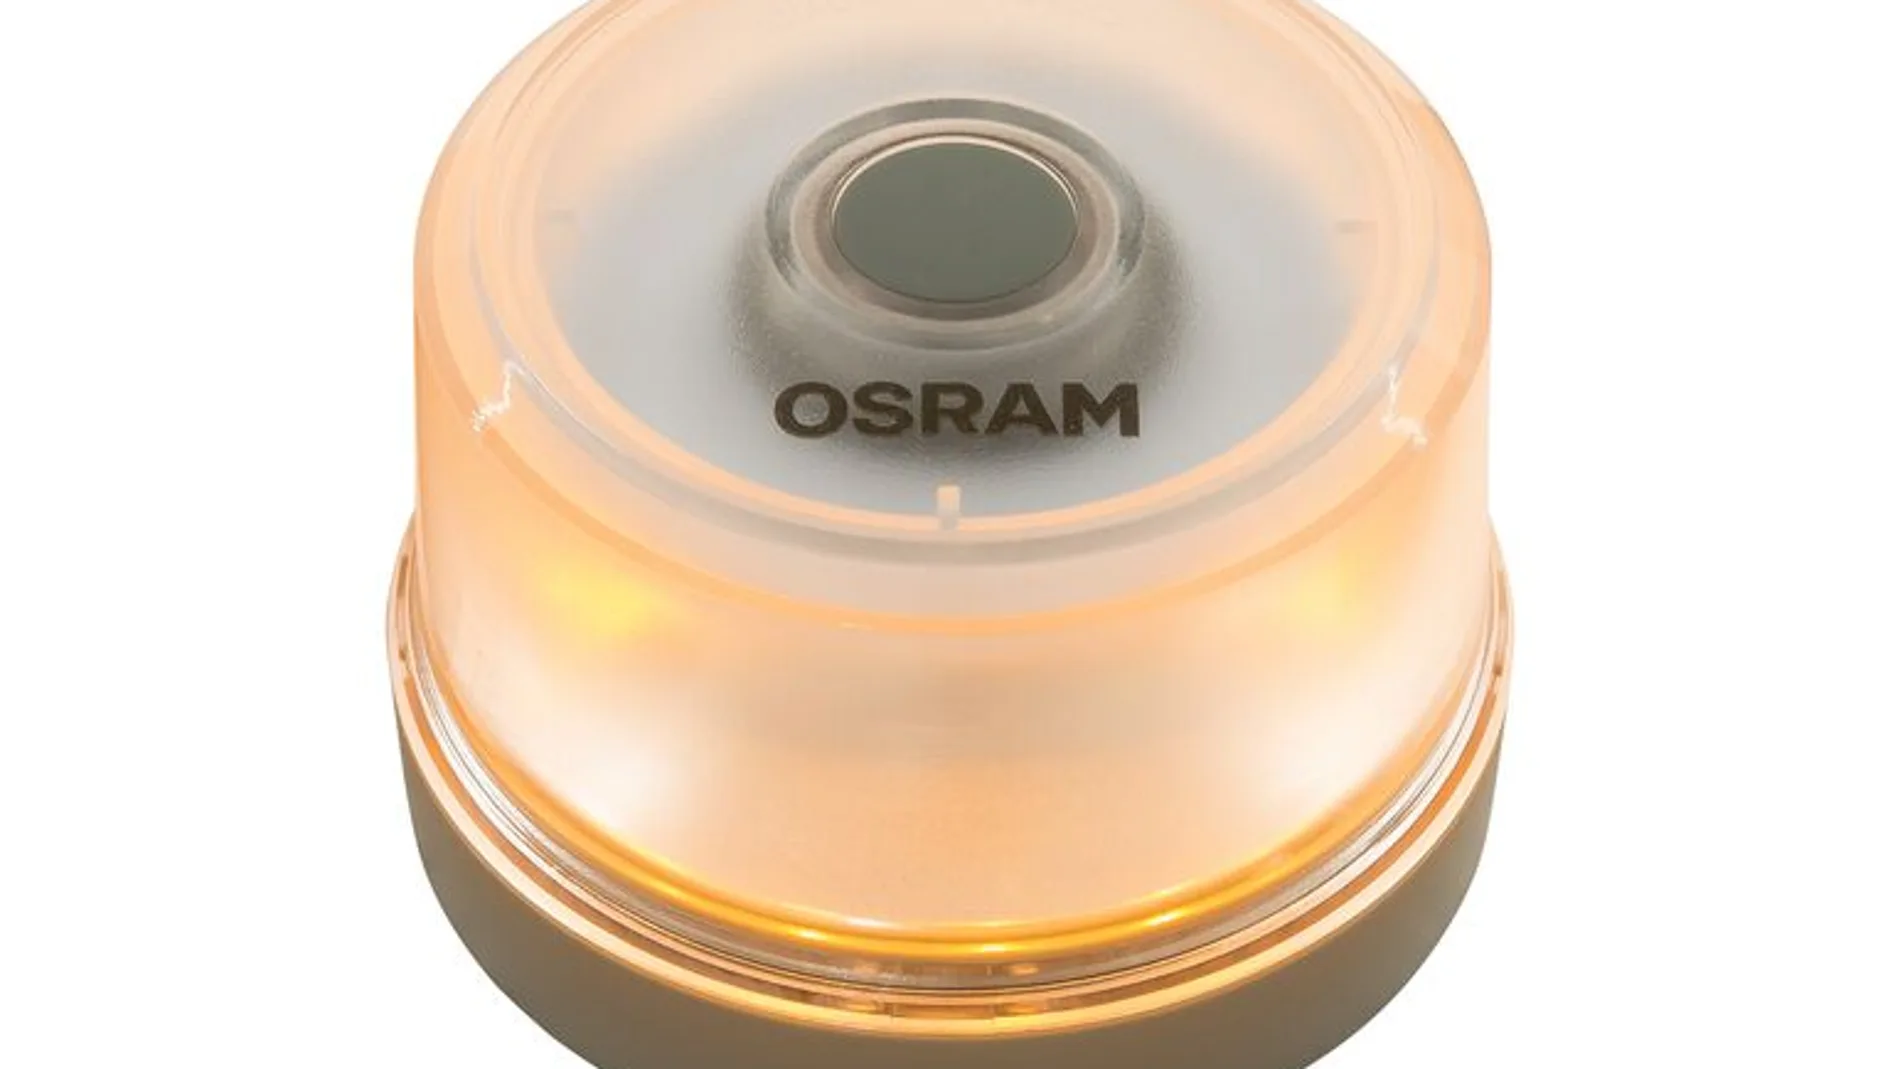 Promoción - Luz de emergencia coche V16 Homologada Led Guardian OSRAM